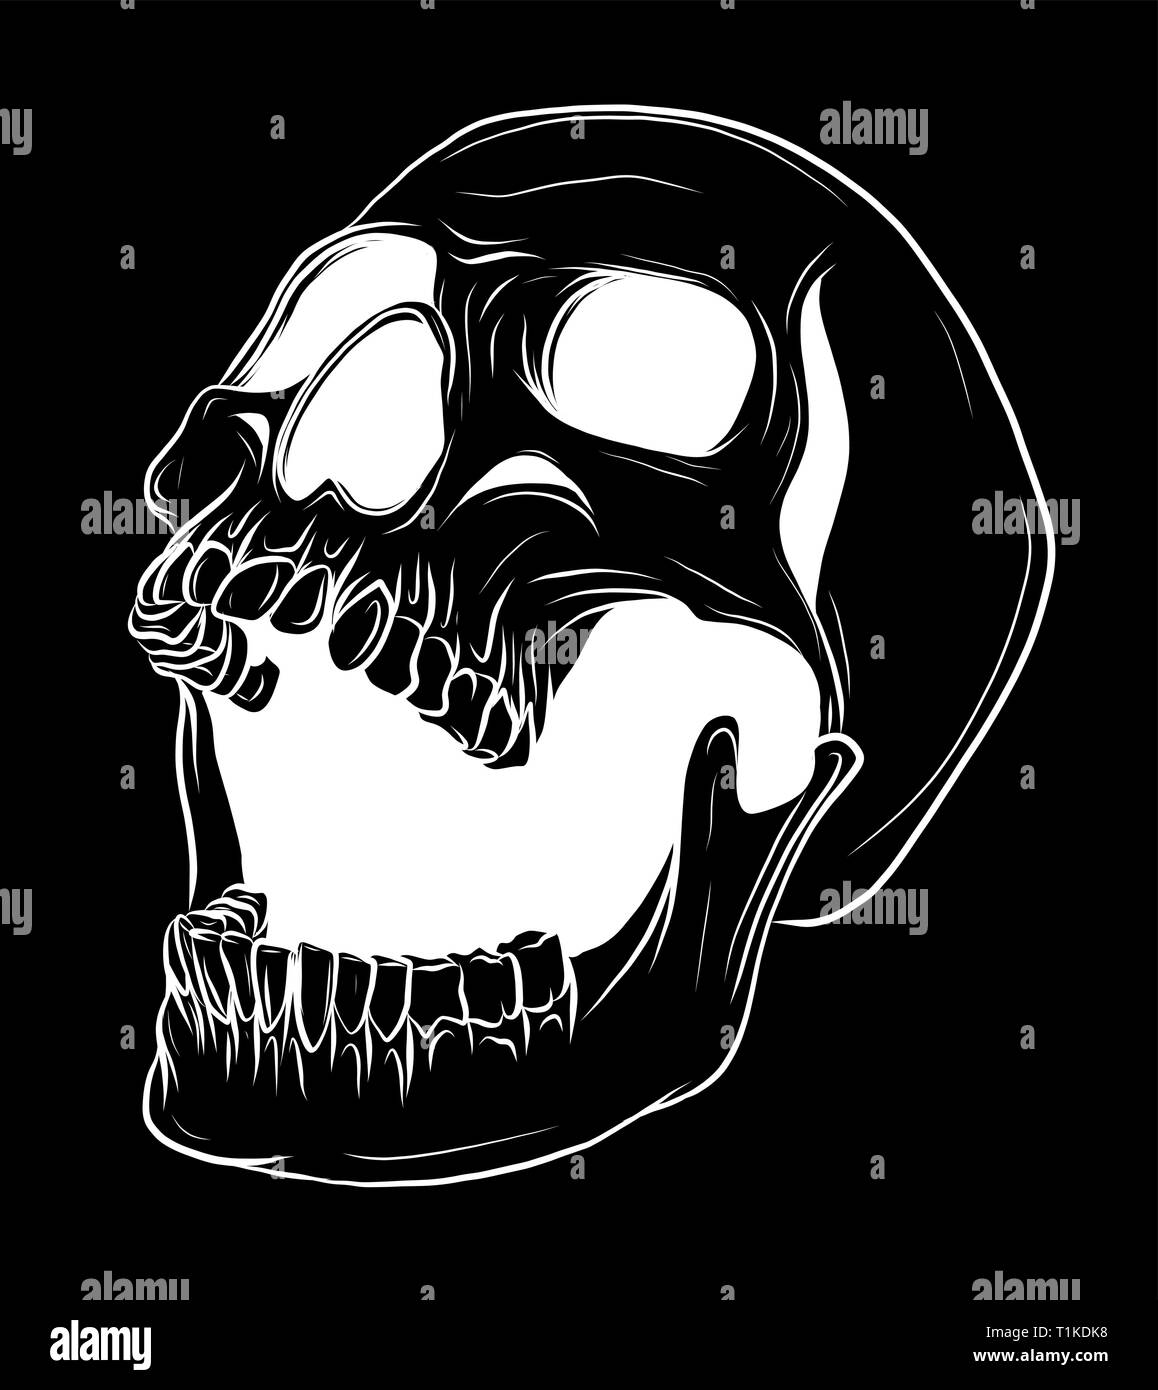 Skull Vector illustration, Collection Of Hand Drawn Skulls, Hard Core Skull Vector Art Stock Vector